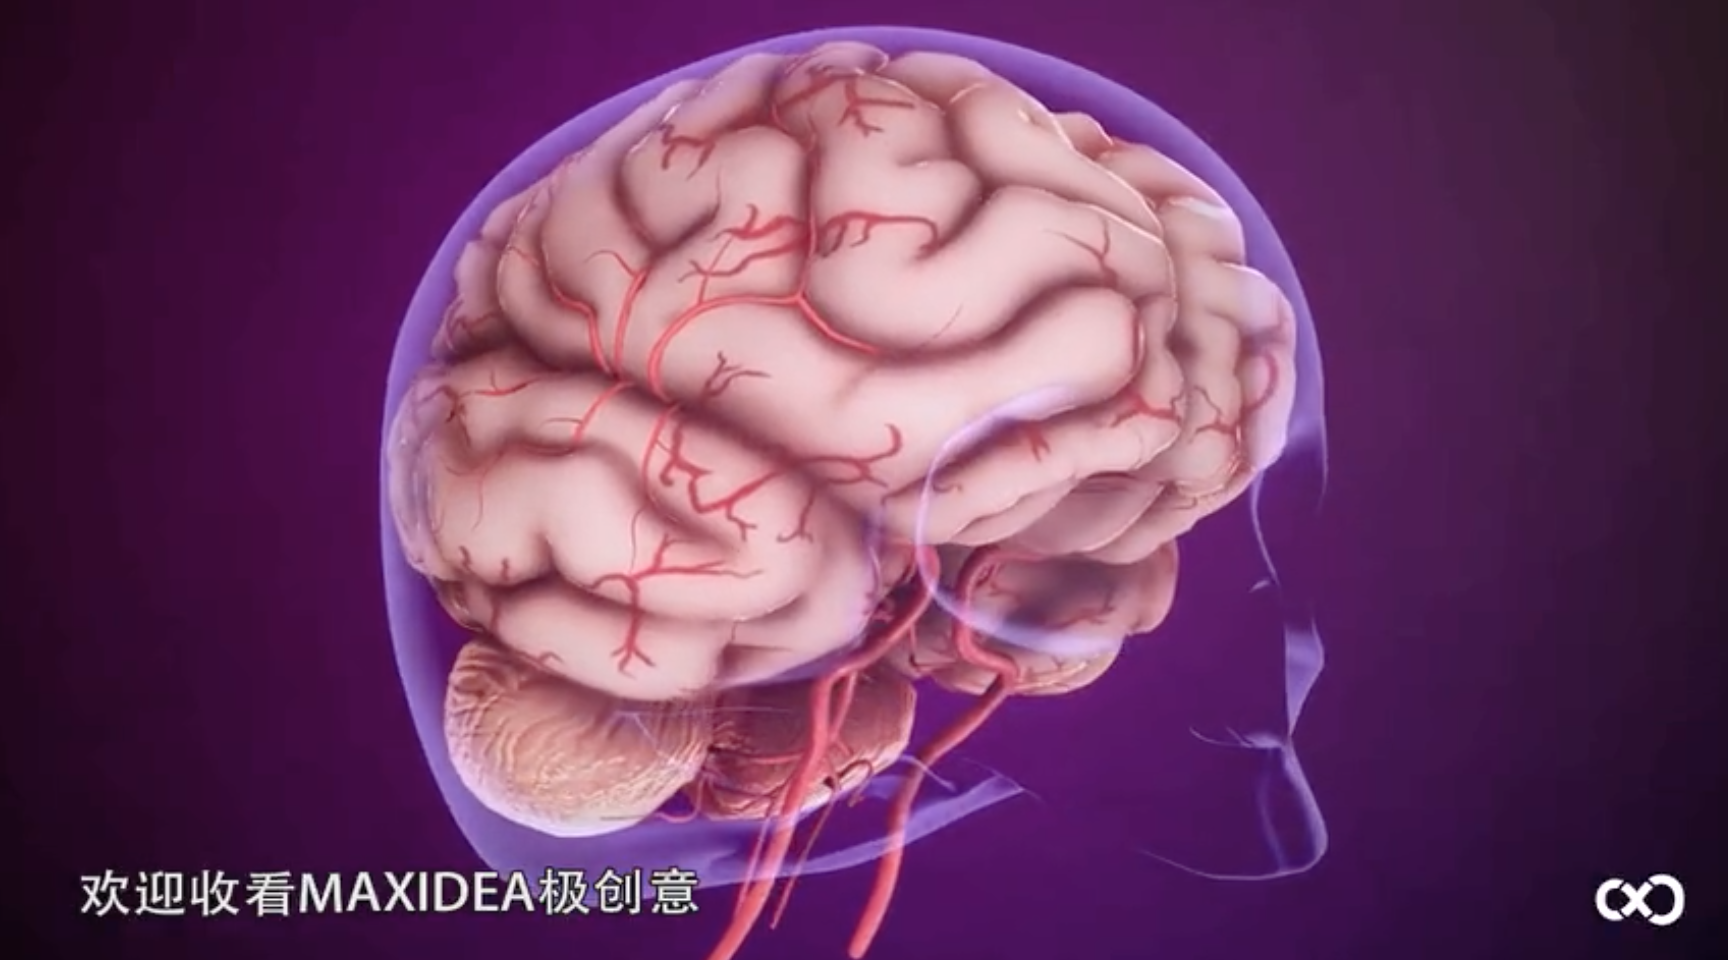 脑血管顺应性成像技术在评估烟雾病患者血管重建术效果中的临床应用丨《Neurosurgery》（中文版）脑血管病分册